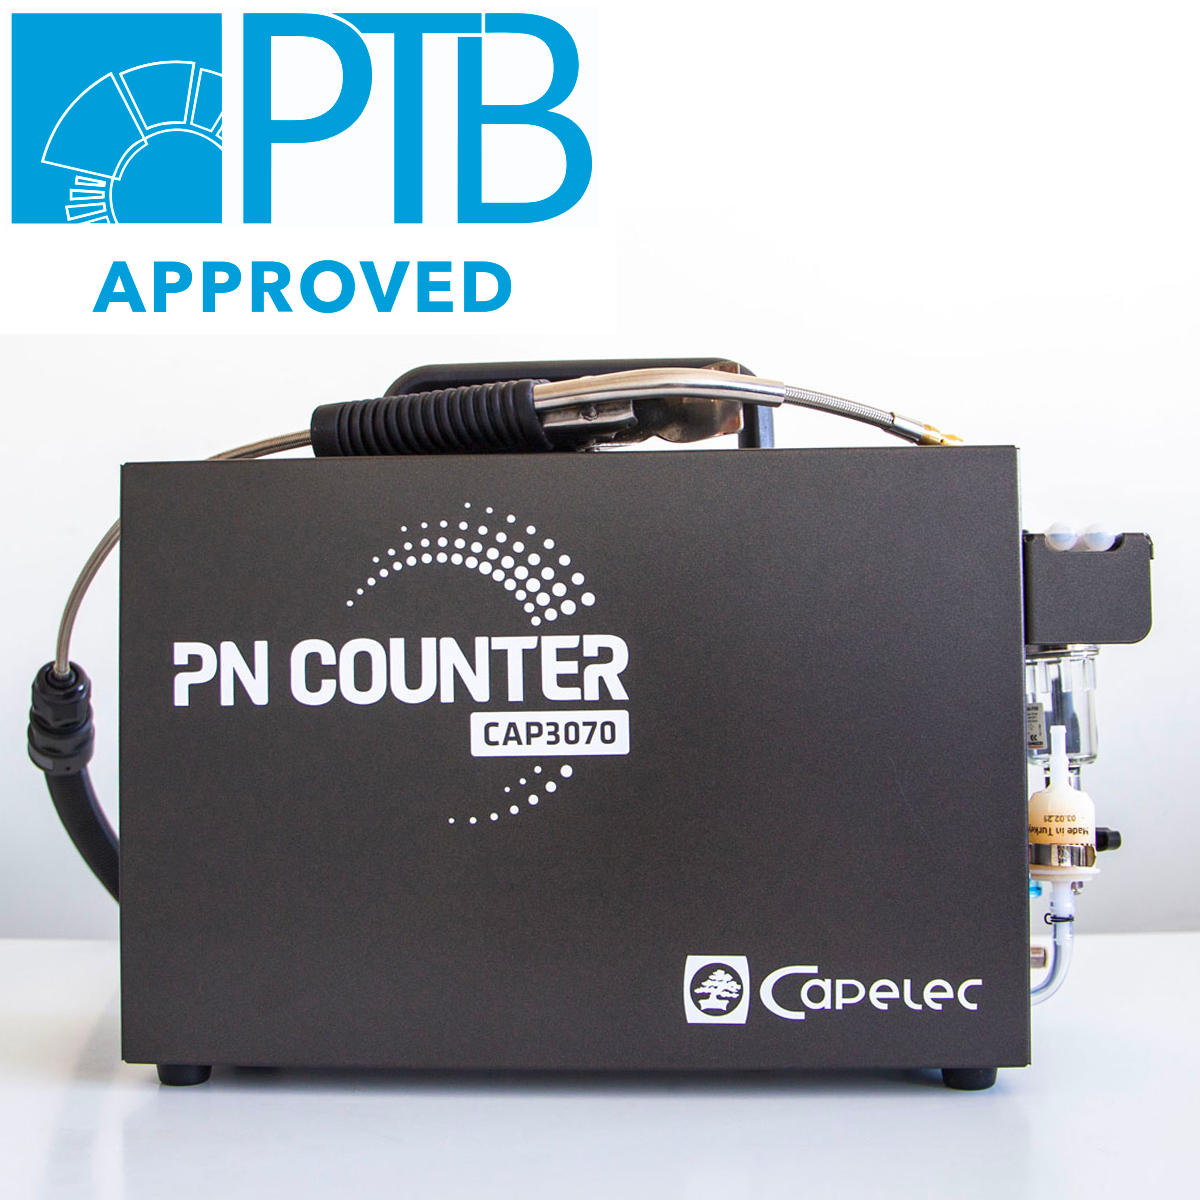 Capelec PN counter PTB